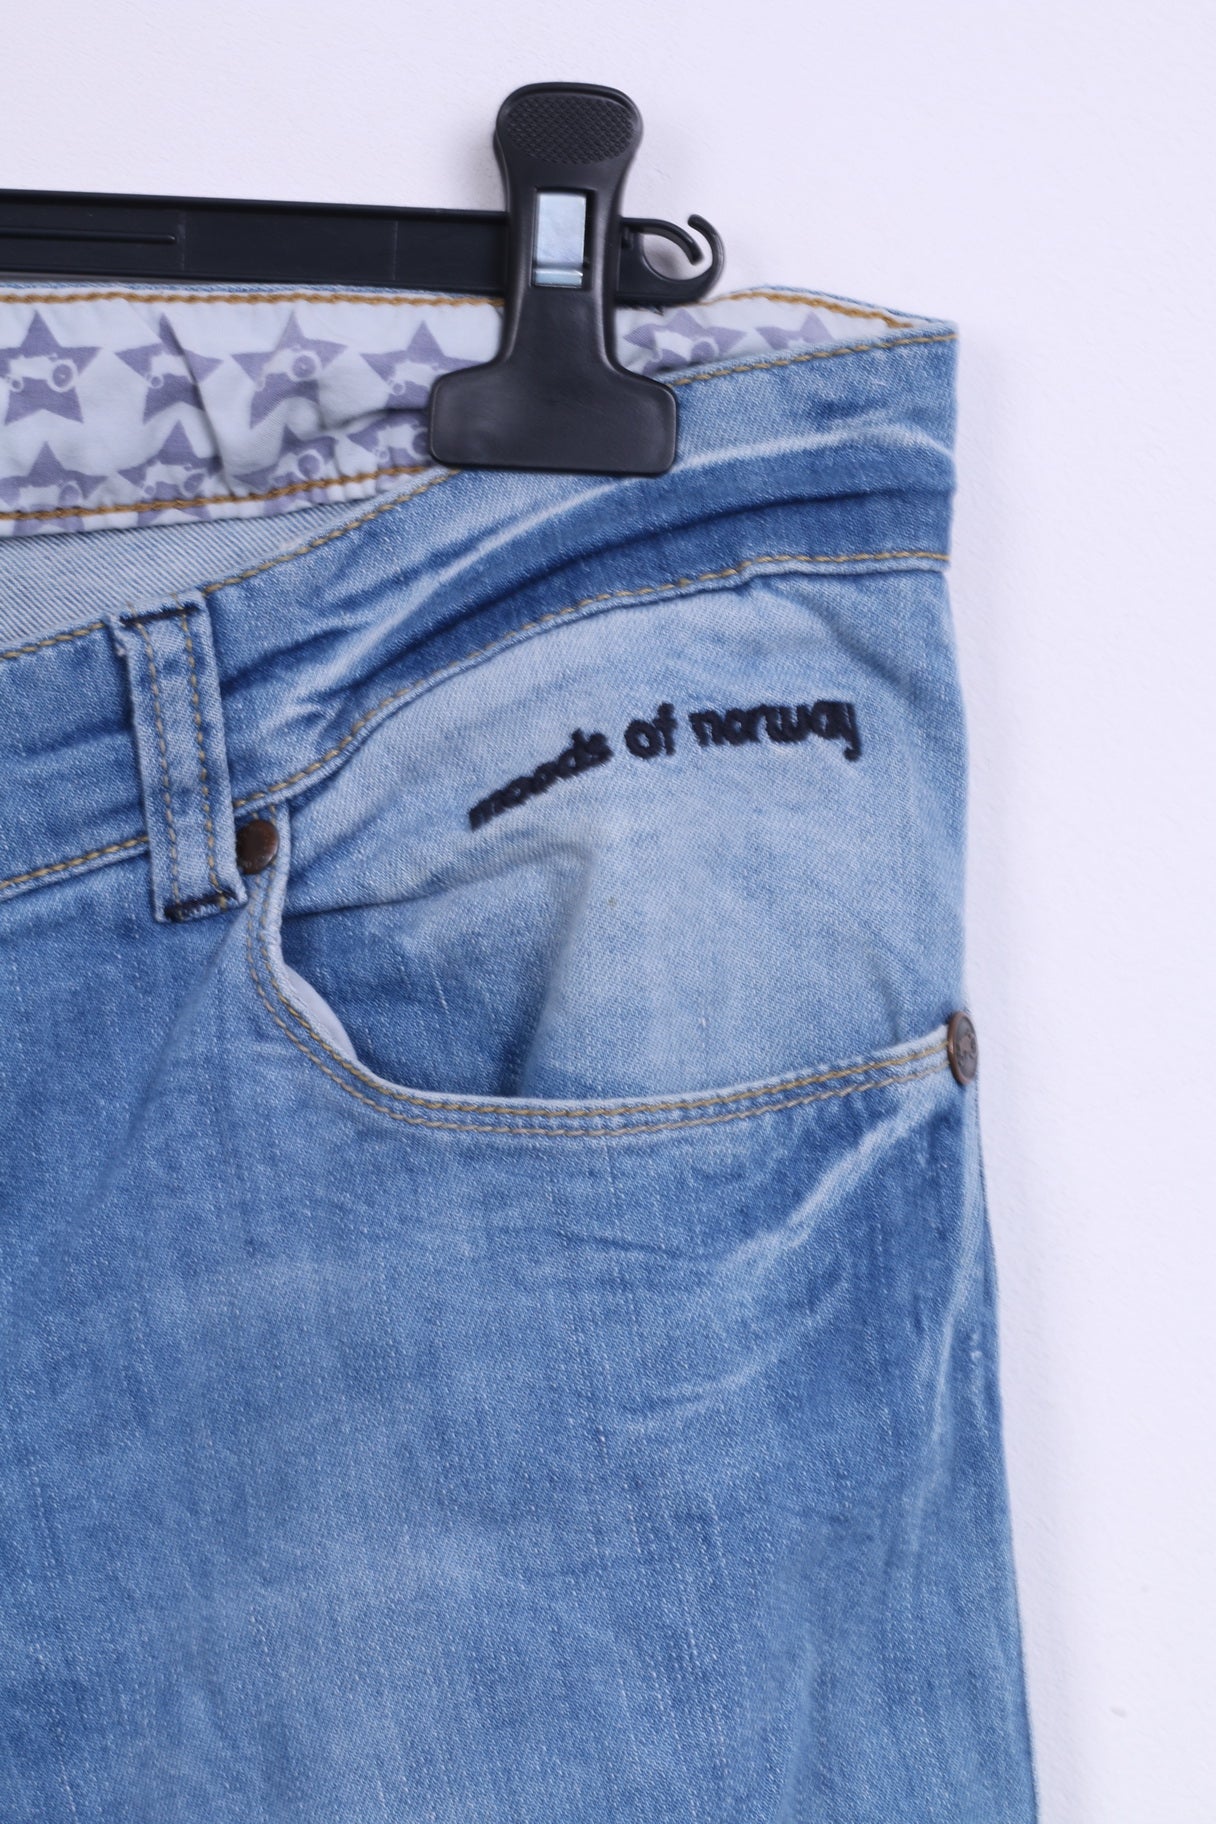 Pantaloni Moods of Norvegia da uomo W36 L32 in cotone azzurro